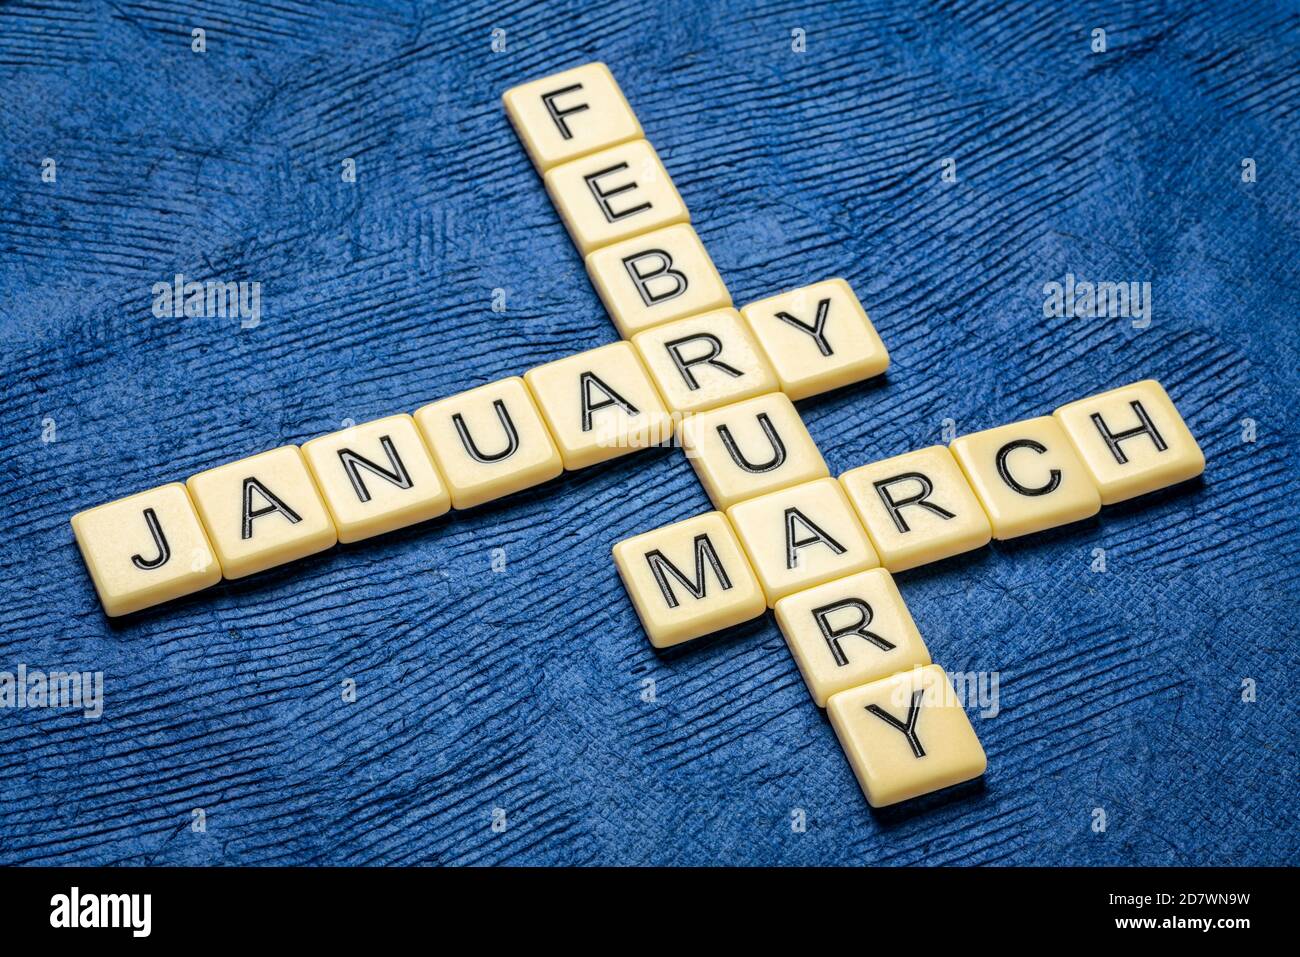 Januar, Februar und März Kreuzworträtsel in Elfenbein Buchstaben Fliesen gegen strukturierte handgefertigte Rinde Papier, Kalender-Konzept Stockfoto